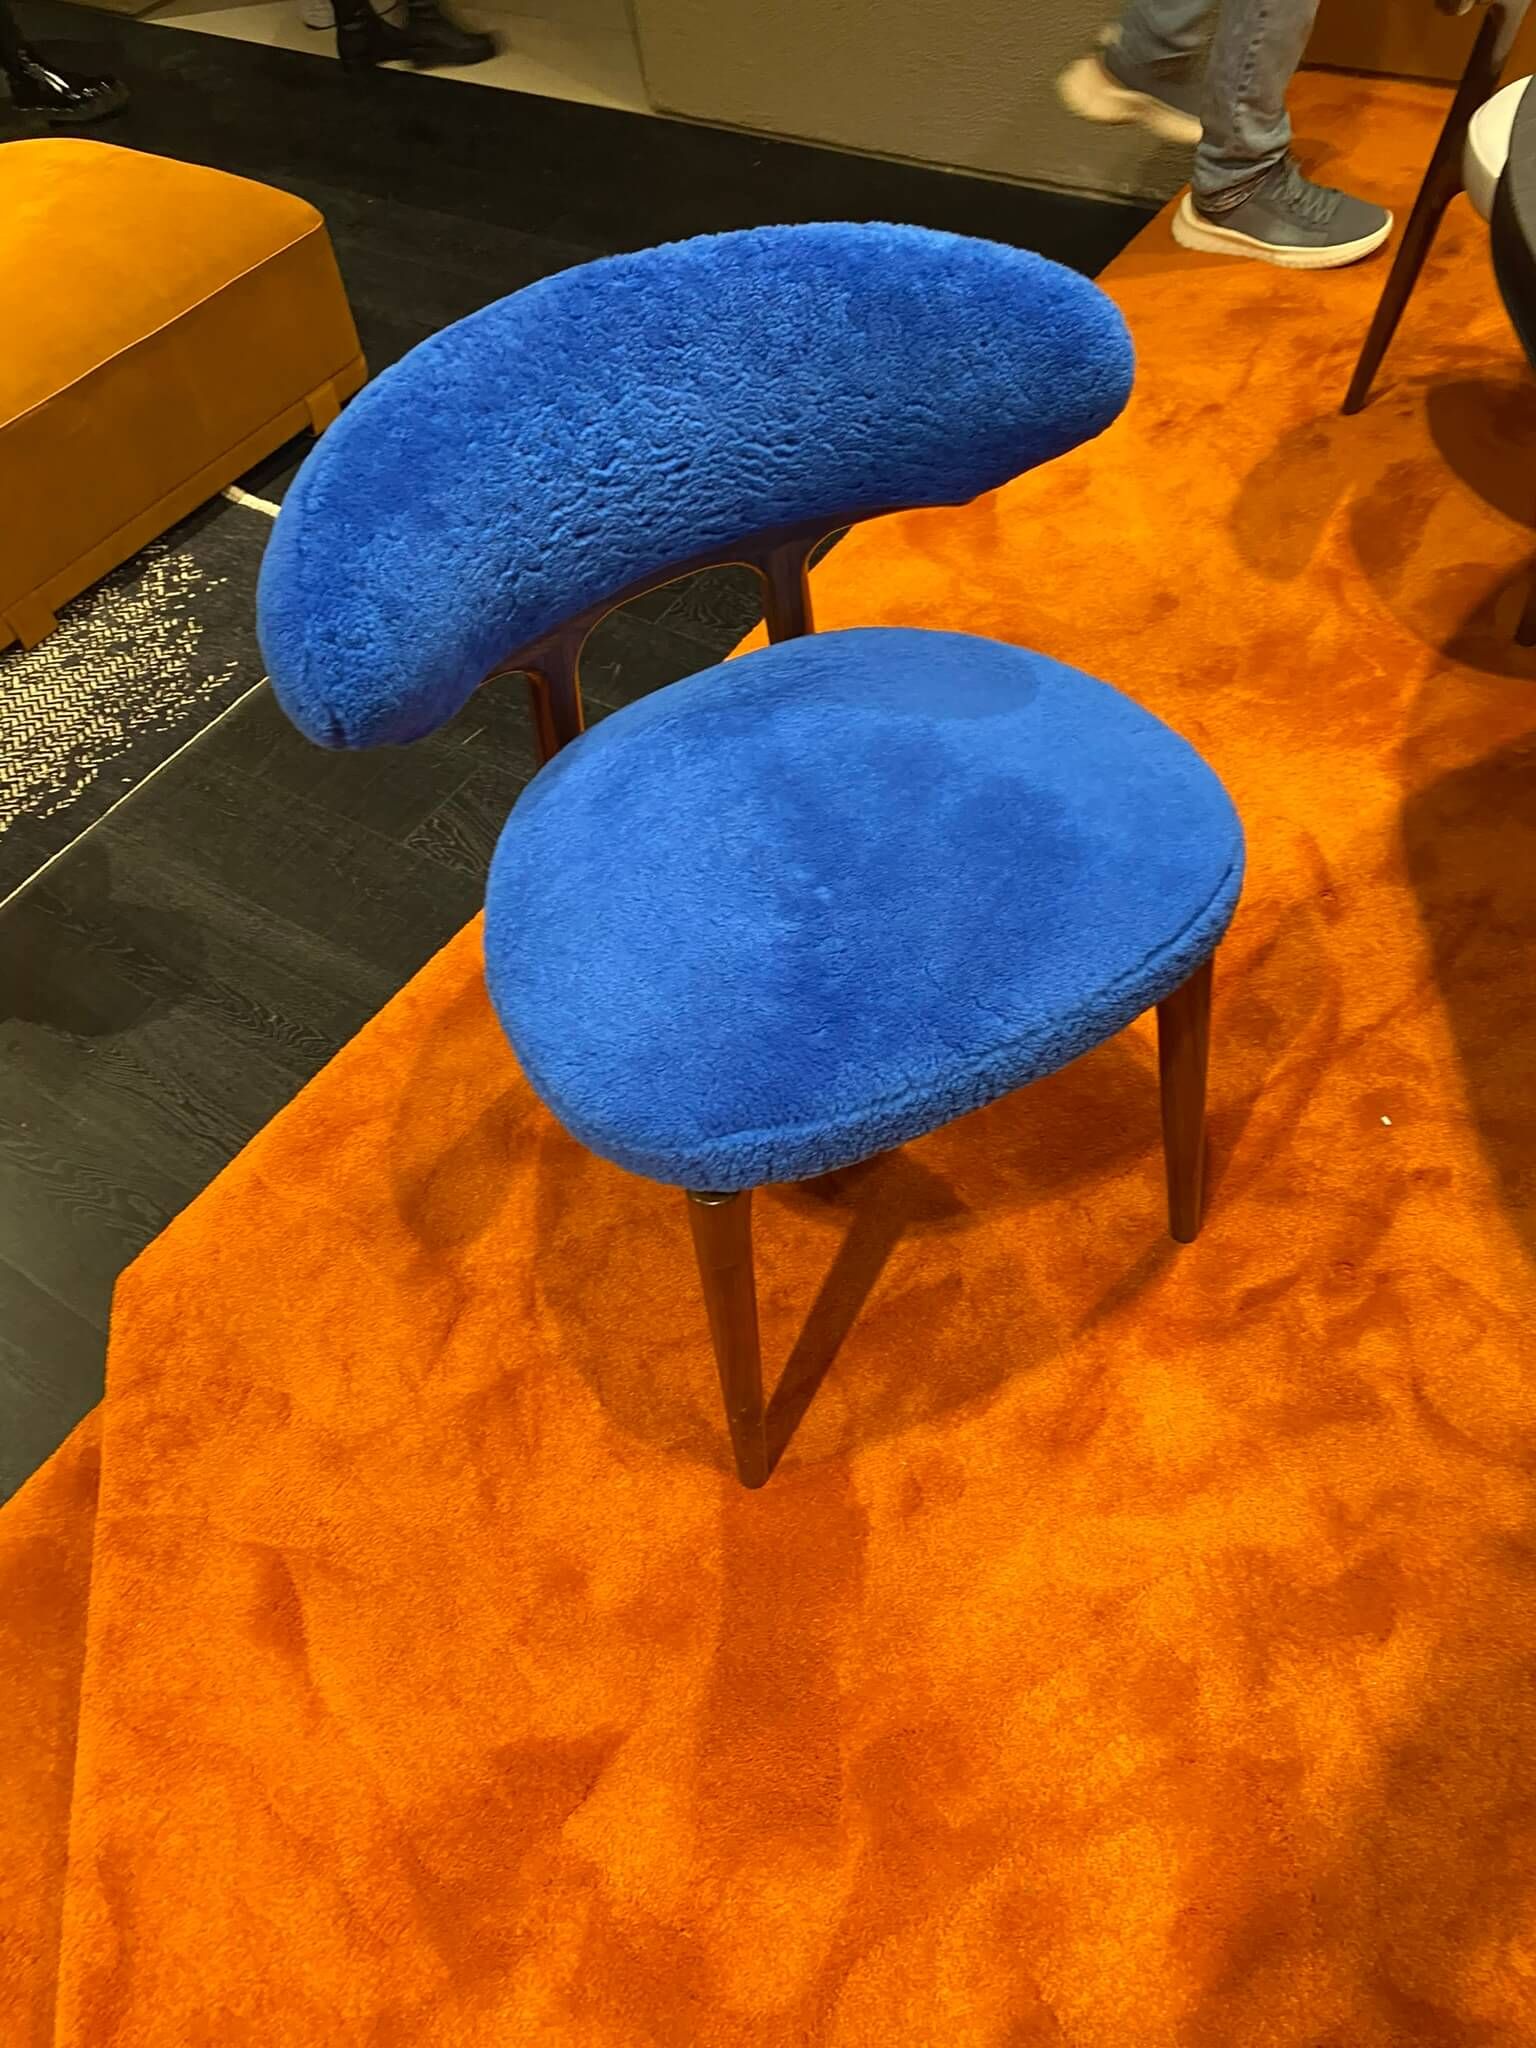 Baxter royal blue chair on orange carpet - new trends at Salone del Mobile - Dean Larkin Design